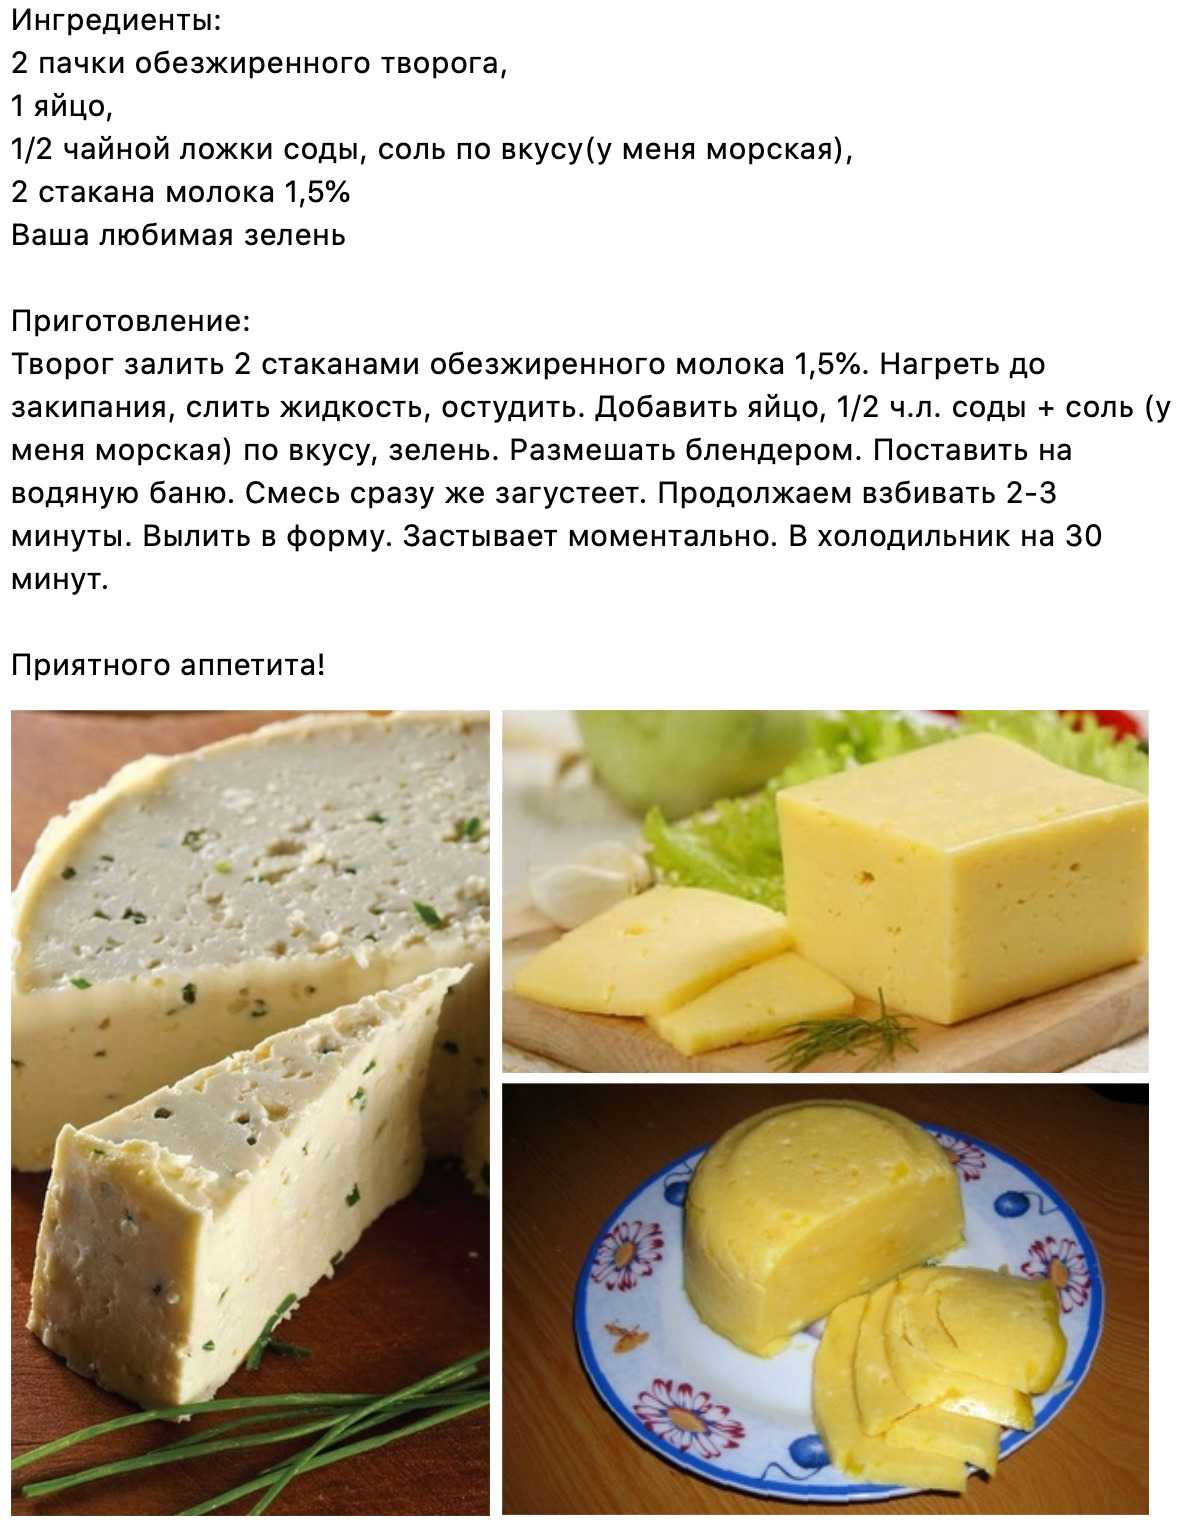 Рецепт вкусного плавленного сыра. Рецепт домашнего сыра. Домашний сыр. Домашний сыр из молока рецепт. Рецепт домашнего сыра из молока.